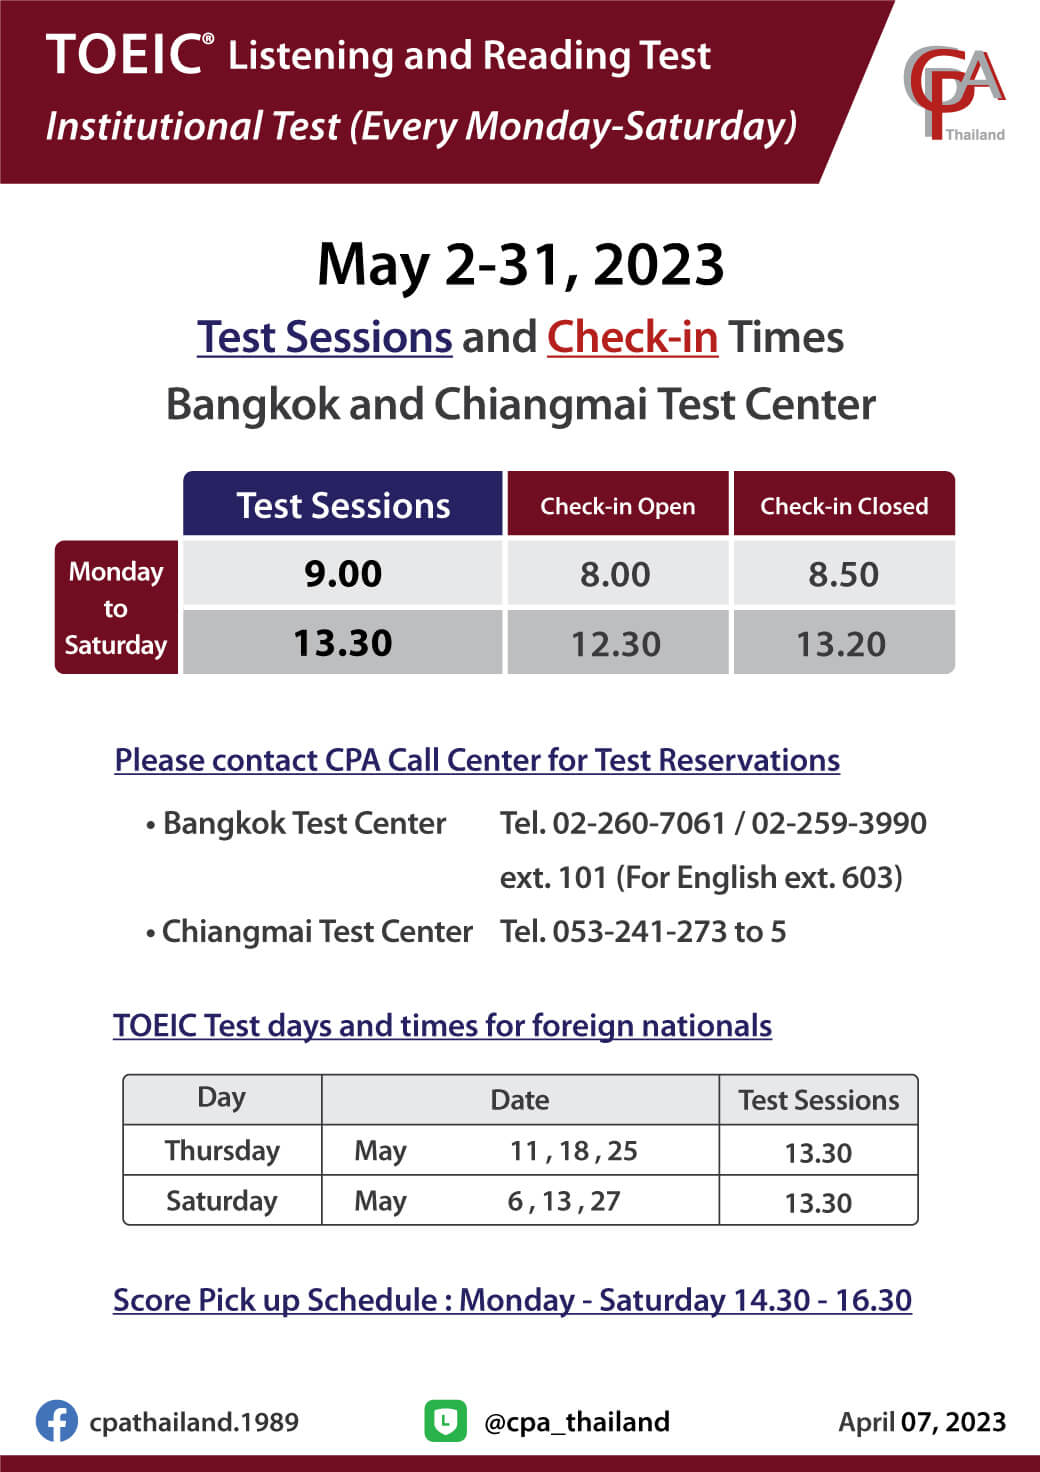 ตารางสอบ toeic กรุงเทพ เชียงใหม่ พฤษภาคม 2566 ศูยน์สอบ CPA Thailand - เตรียมพร้อมก่อนสอบ ติว TOEIC การันตีคะแนน สถาบันสอนภาษาอังกฤษ EduFirst